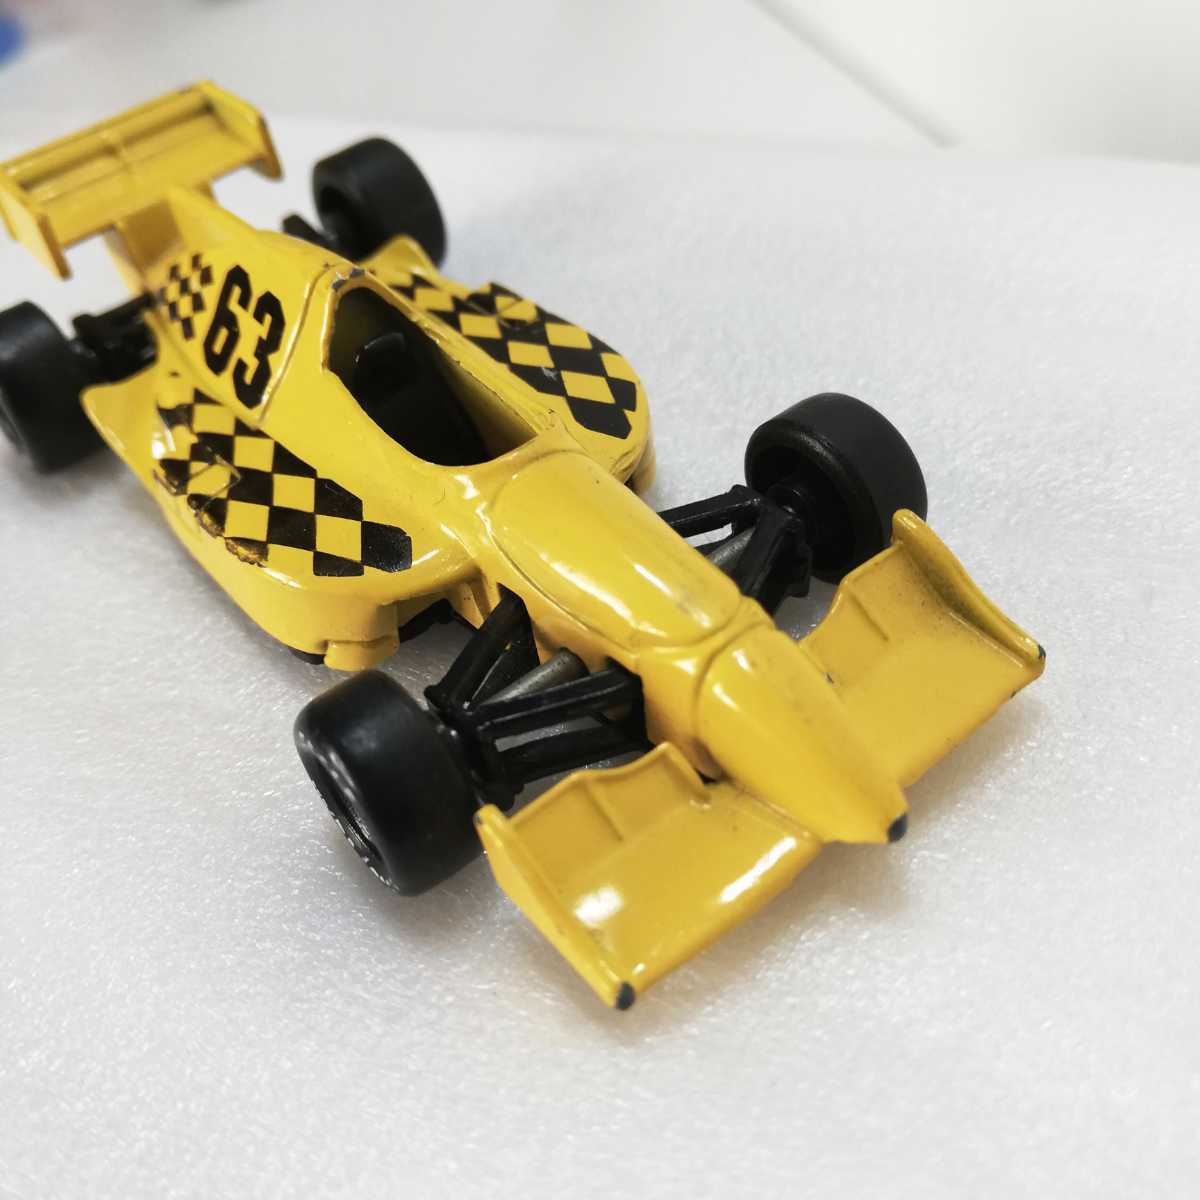 Maisto Formula One Style Race Car Yellow & Black #63 マイスト F1 レースカー イエロー&ブラック ミニカー の画像3